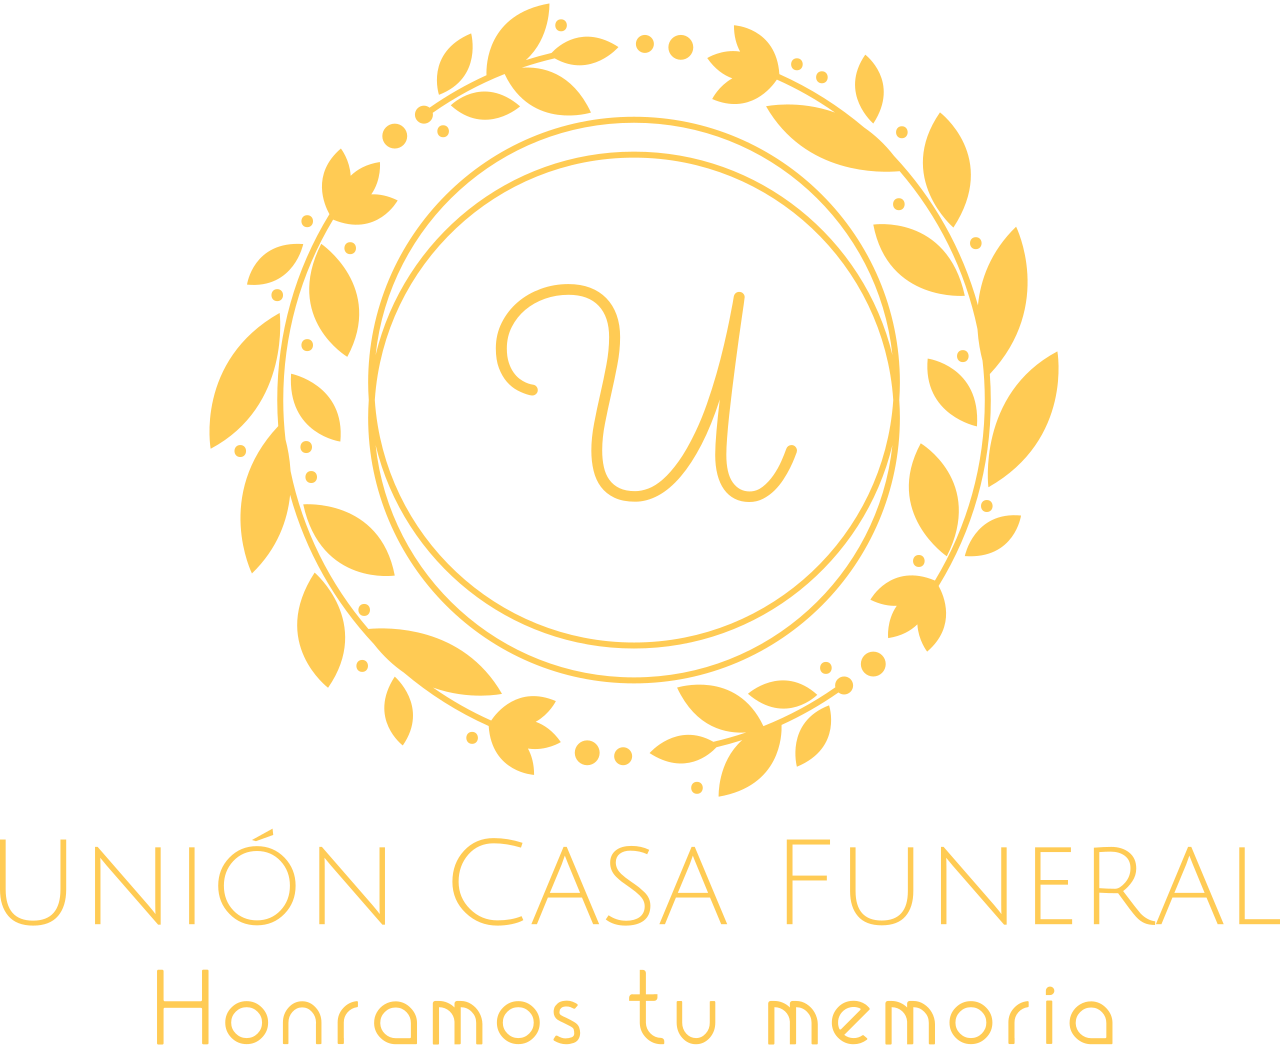 Unión Casa Funeral's web page